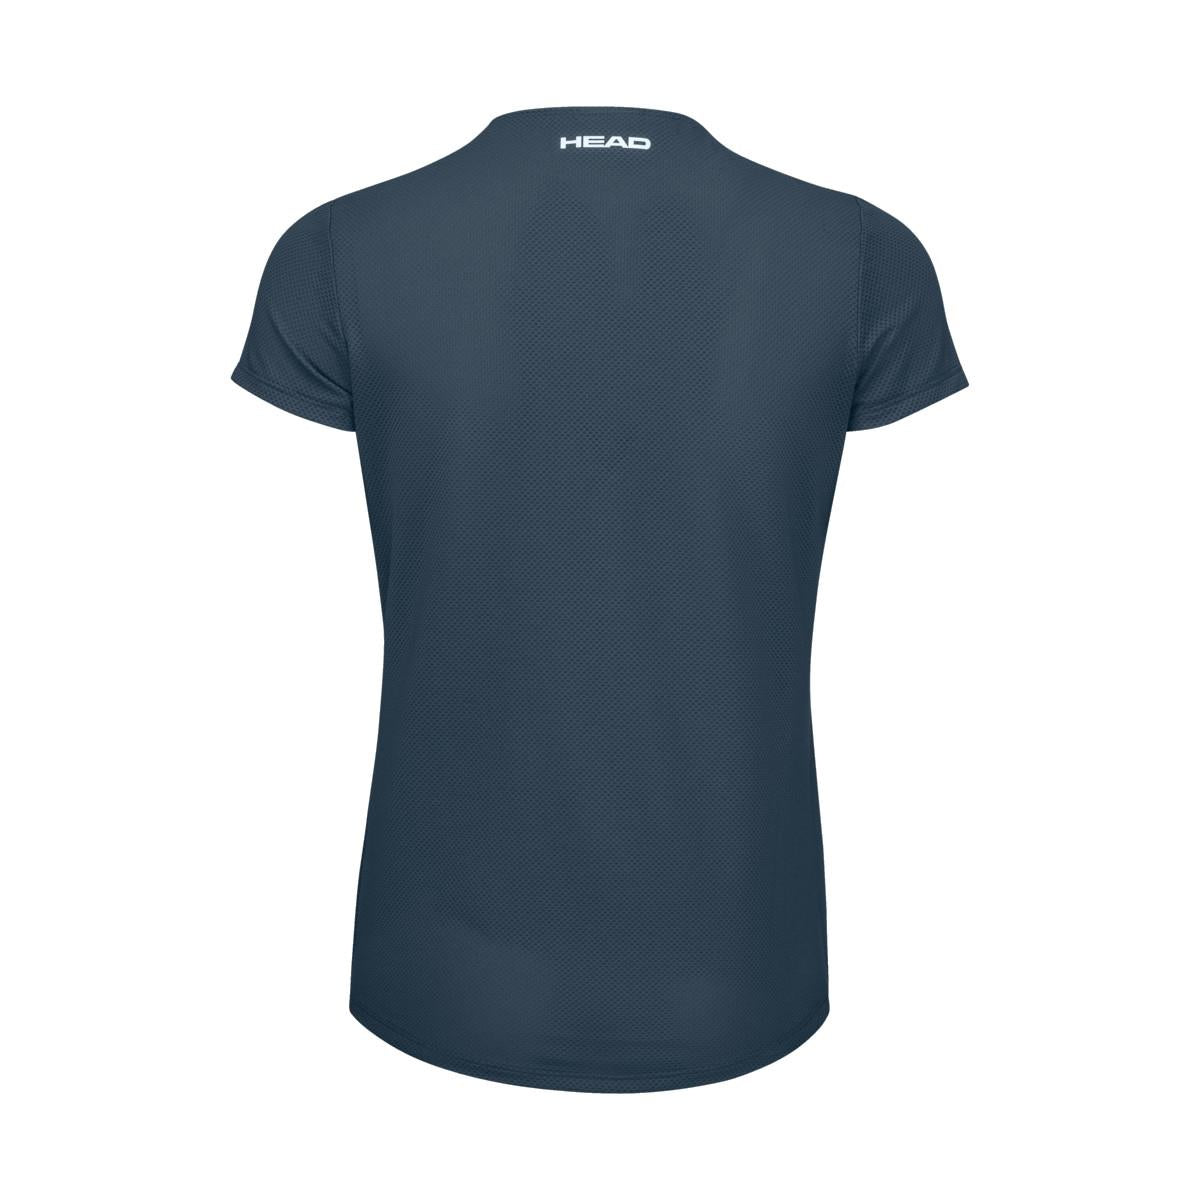 HEAD Womens Tie-Break Badminton T-Shirt - Navy Blue - Rear